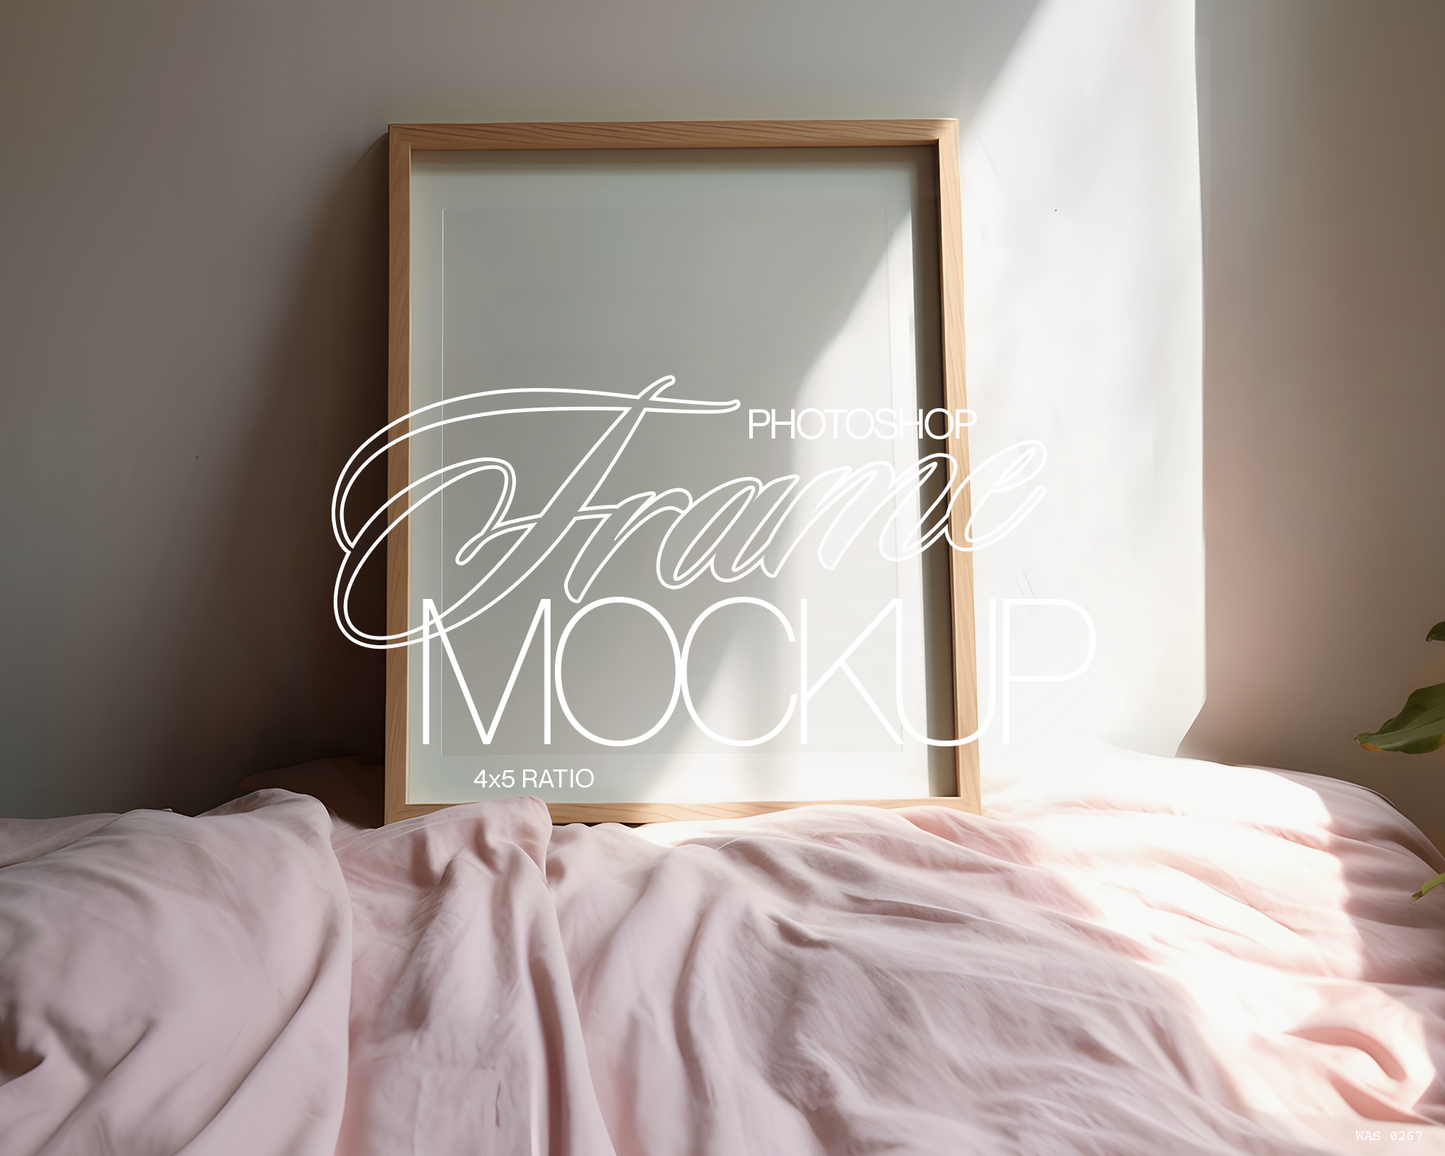 4x5 Wood Frame Pastel Bed Mockup